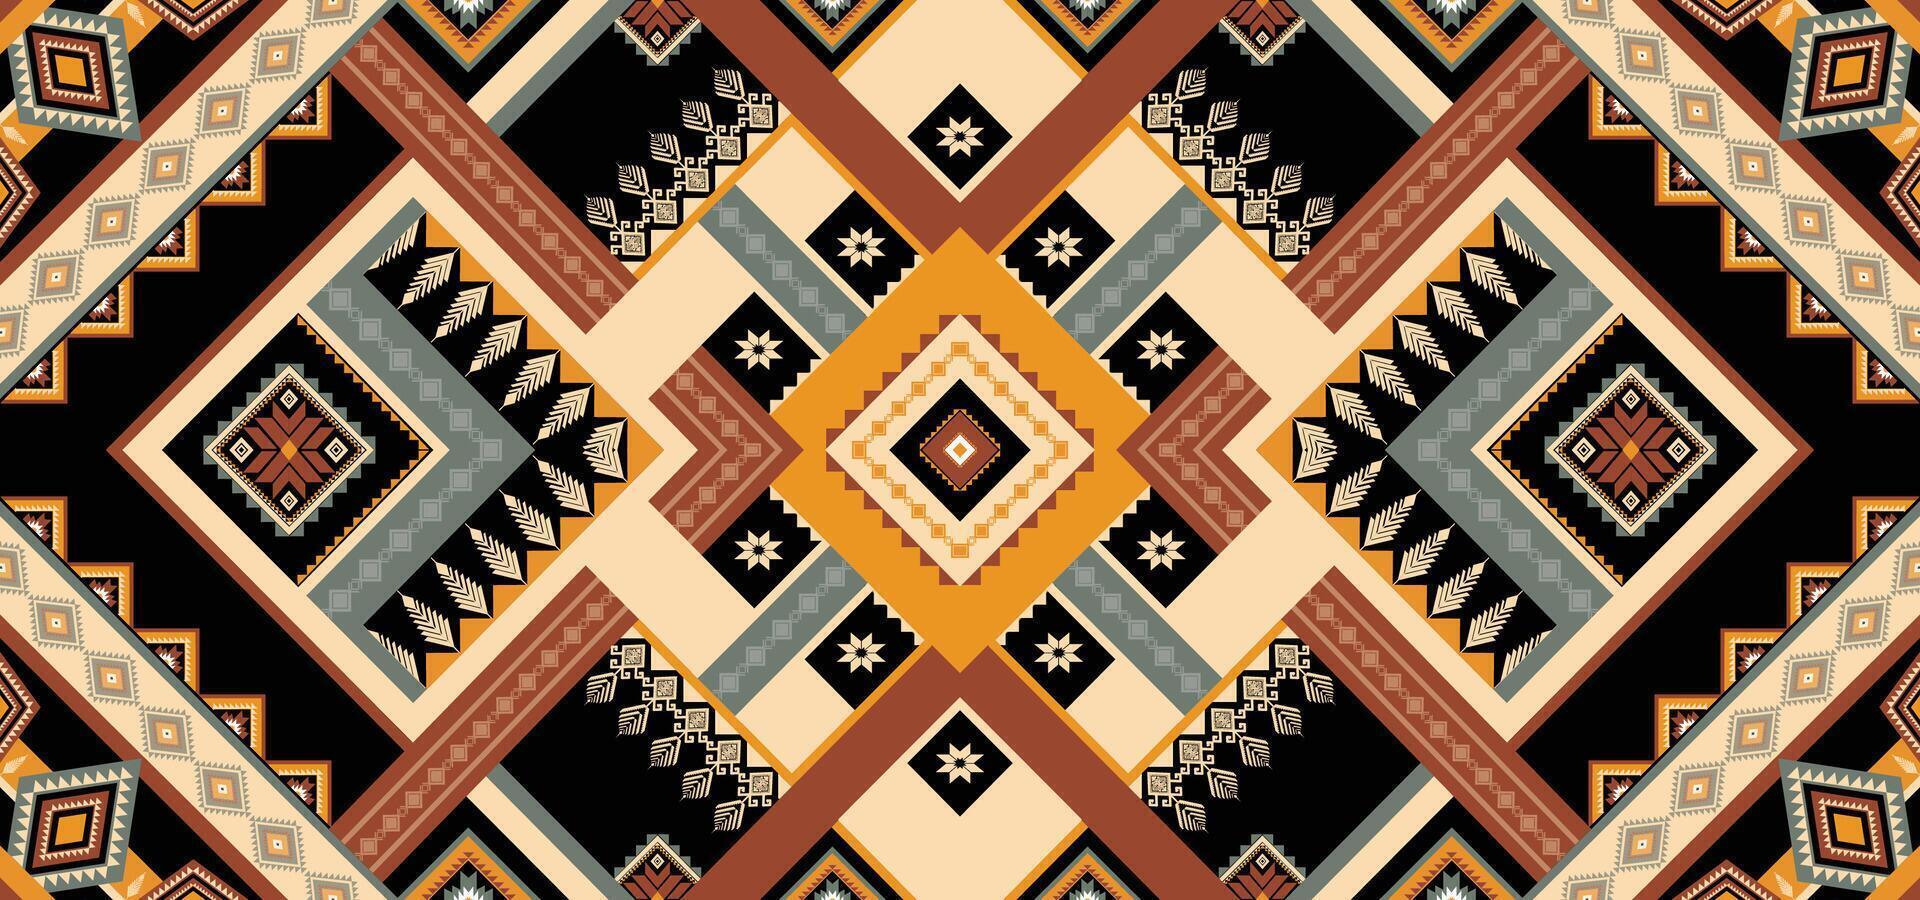 vecteur de motif ethnique géométrique. motif rayé et bohème motif africain, américain, mexicain, aztèque occidental. conçu pour l'arrière-plan, le papier peint, l'impression, la moquette, l'emballage, la tuile, l'illustratoin batik.vector.